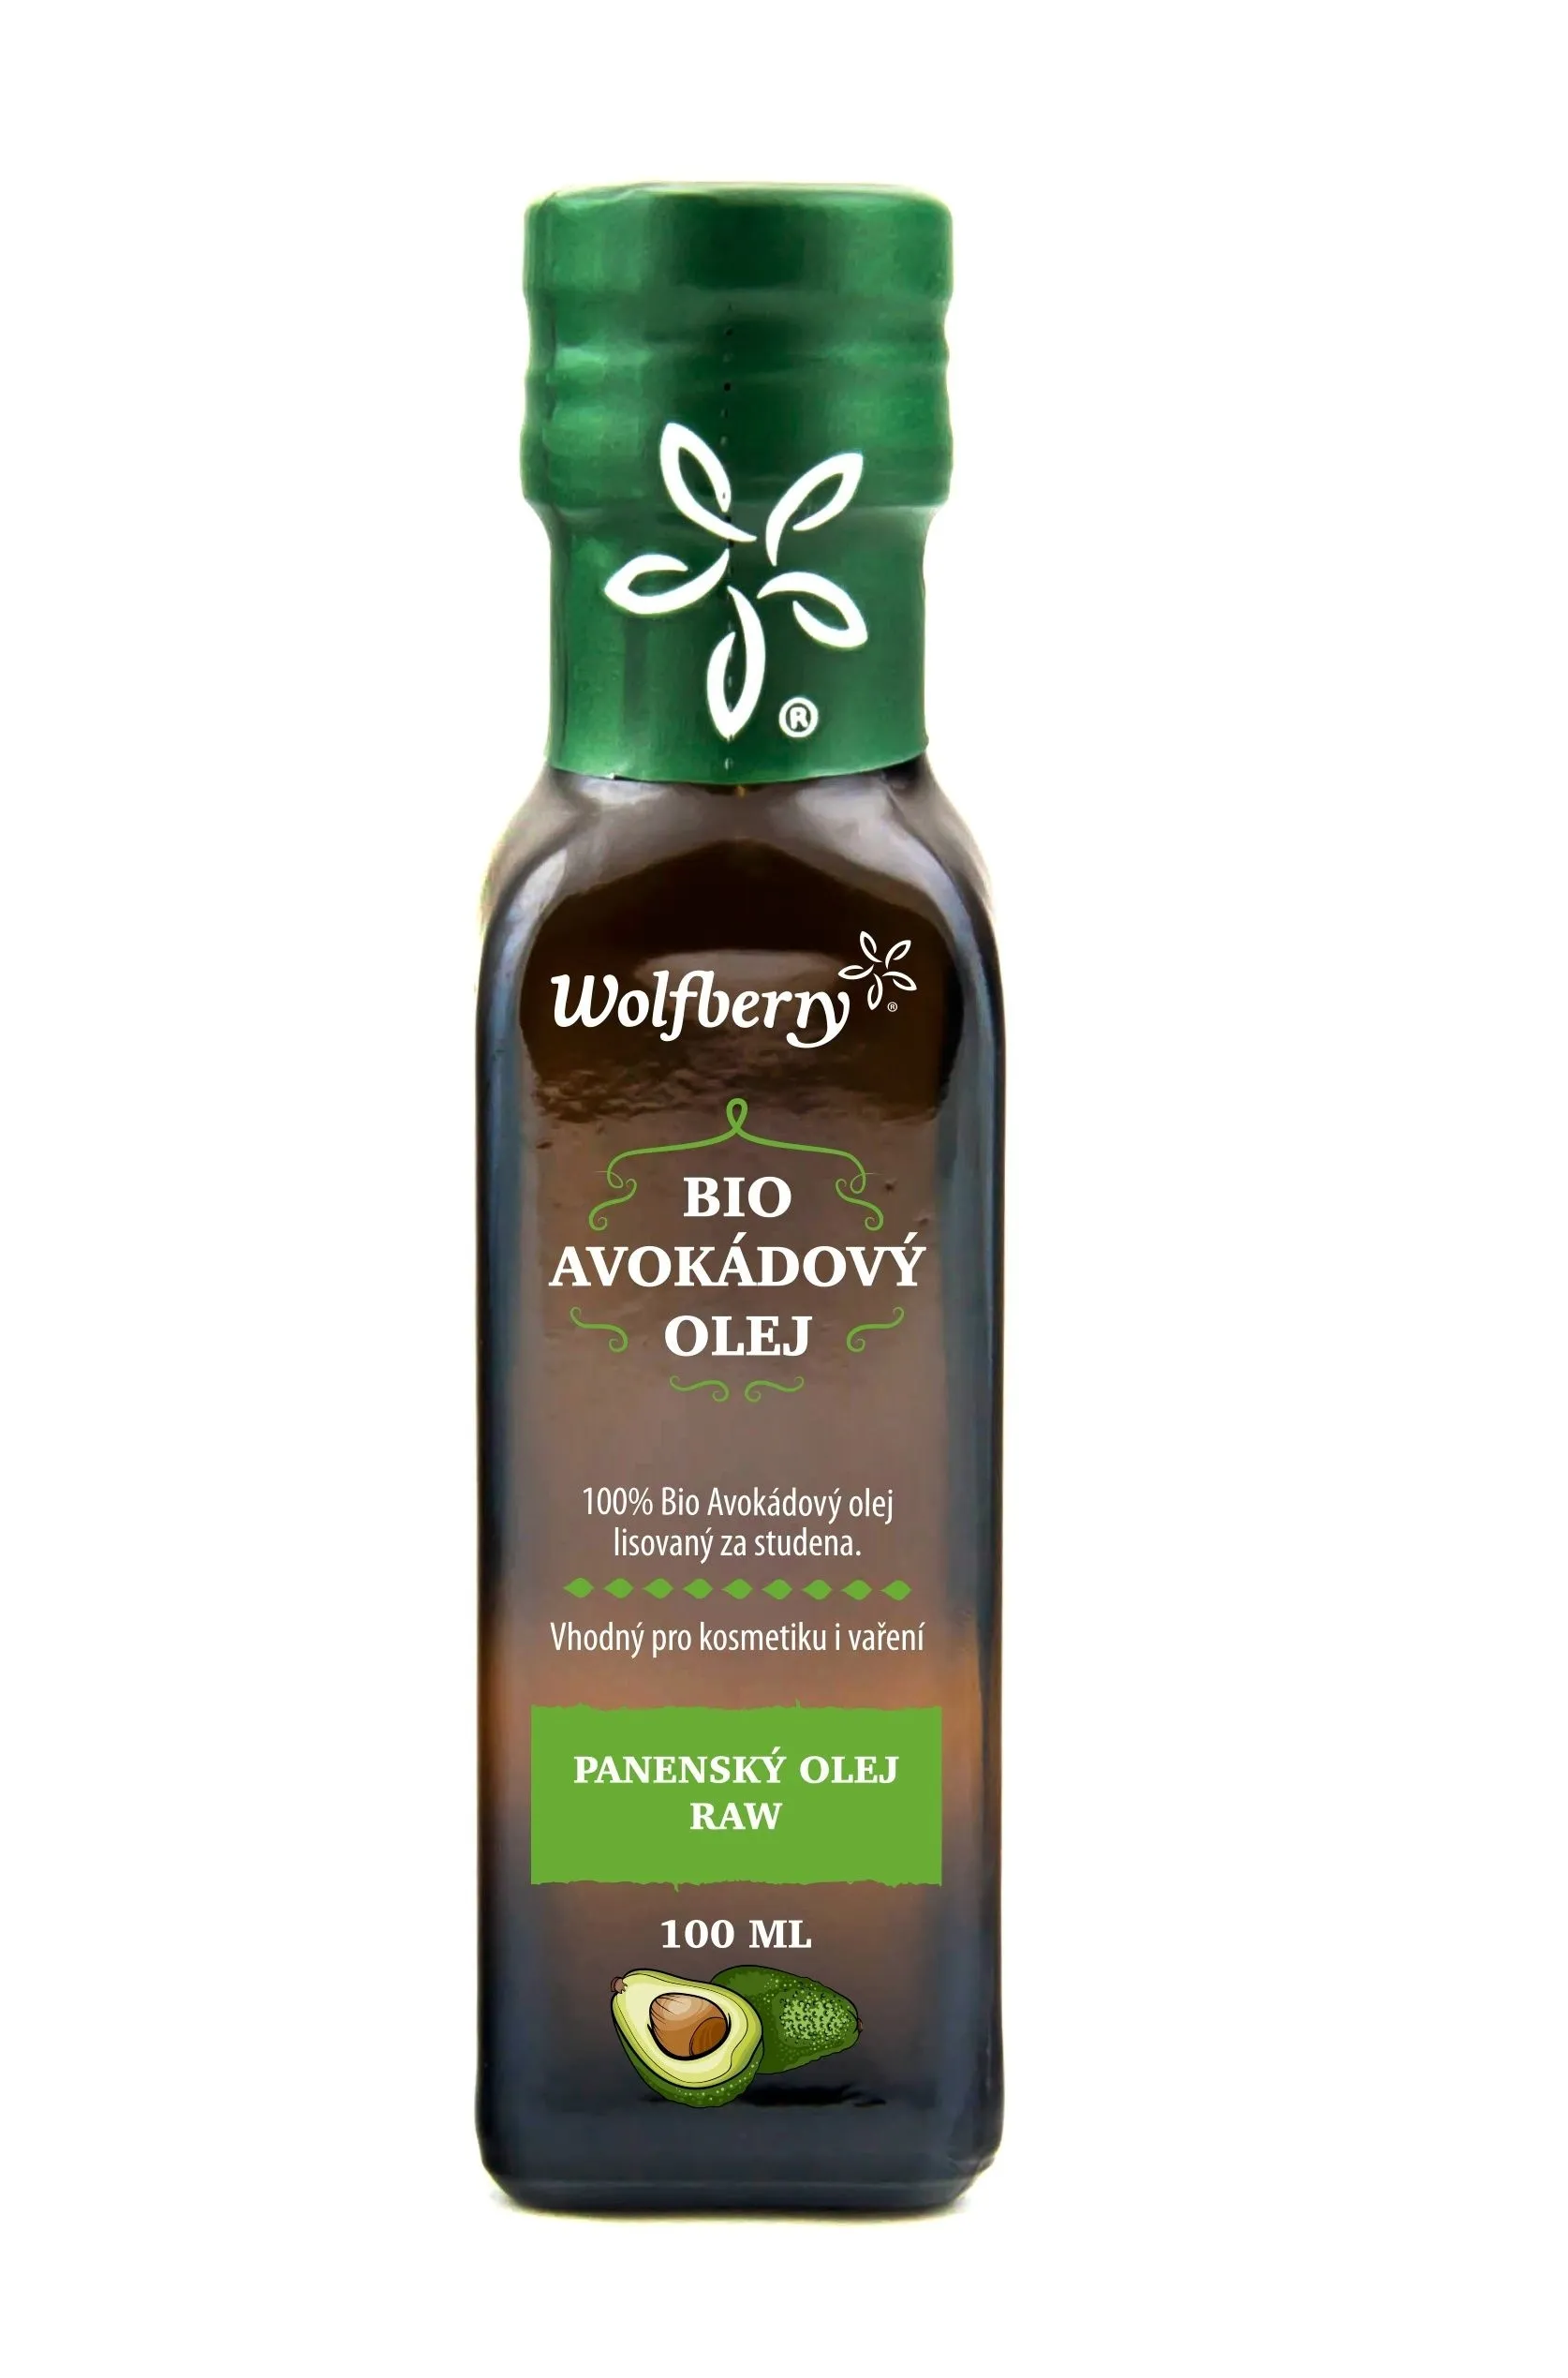 Wolfberry Avokádový olej BIO